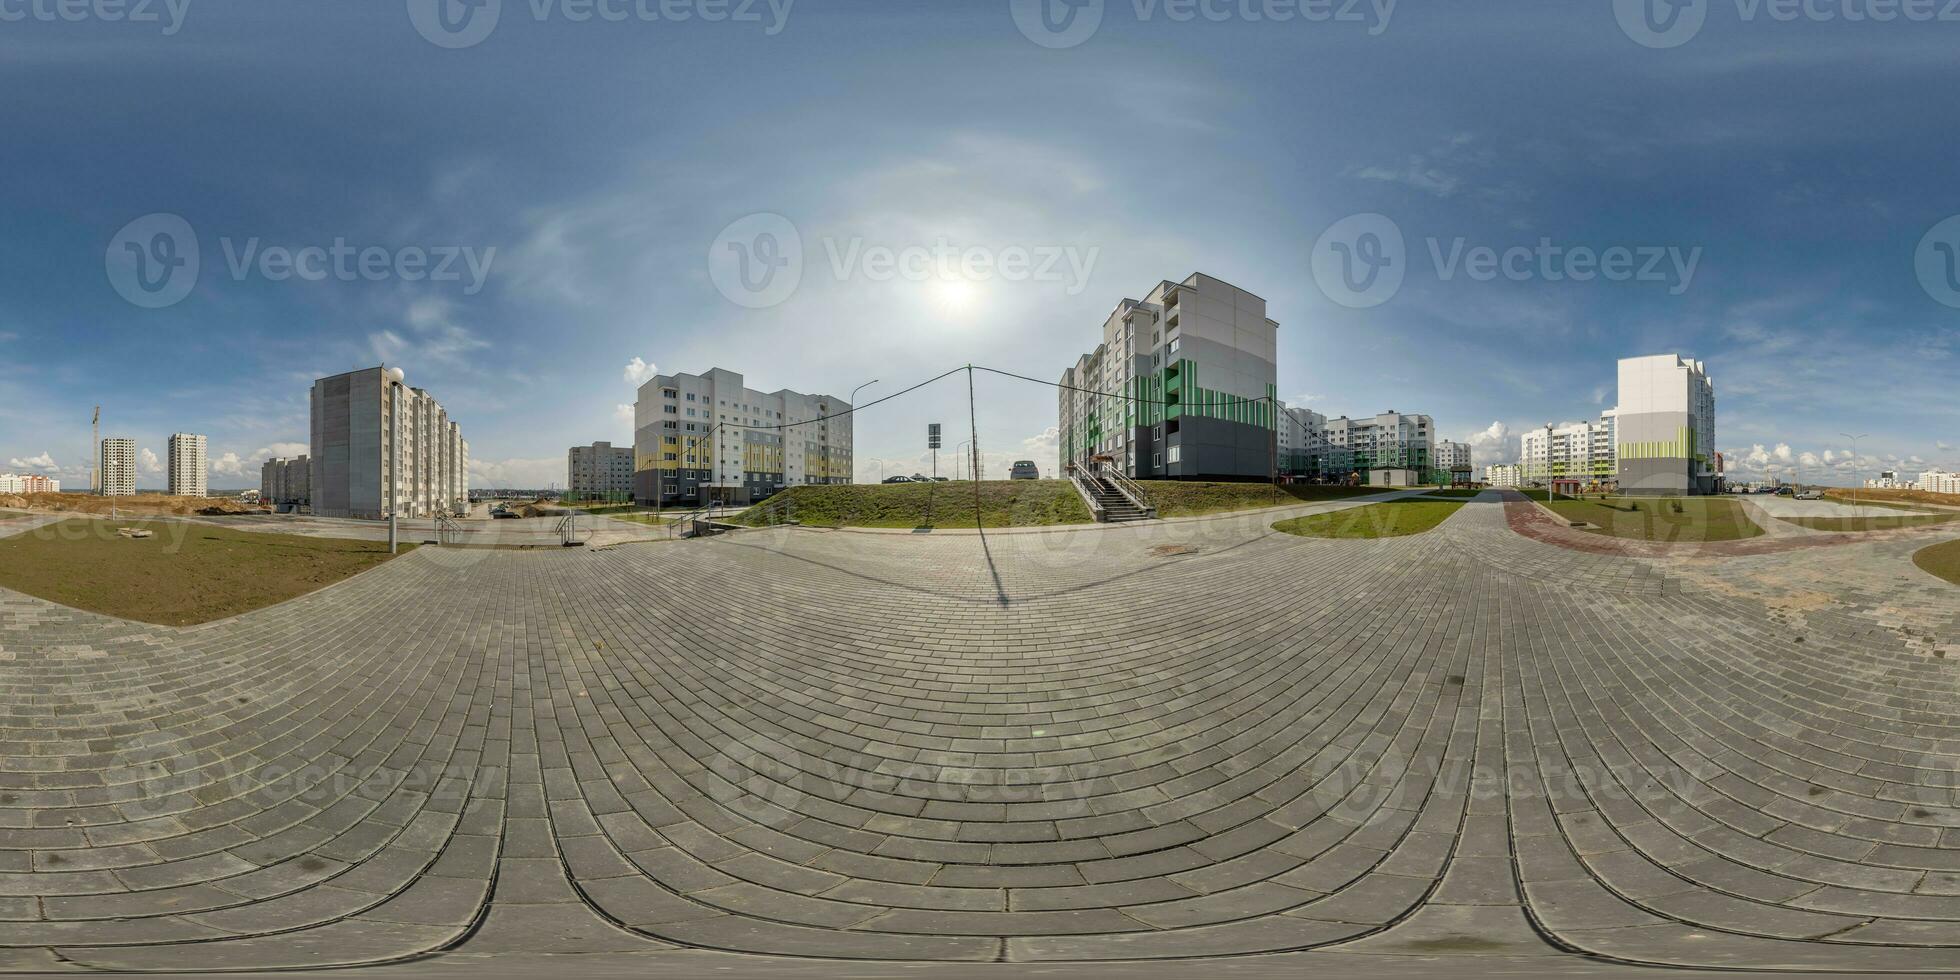 360 hdri panorama vue avec grattes ciels dans Nouveau moderne Résidentiel complexe avec gratte-ciel bâtiments dans ville avec couvert ciel dans équirectangulaire sphérique projection, prêt vr virtuel réalité contenu photo